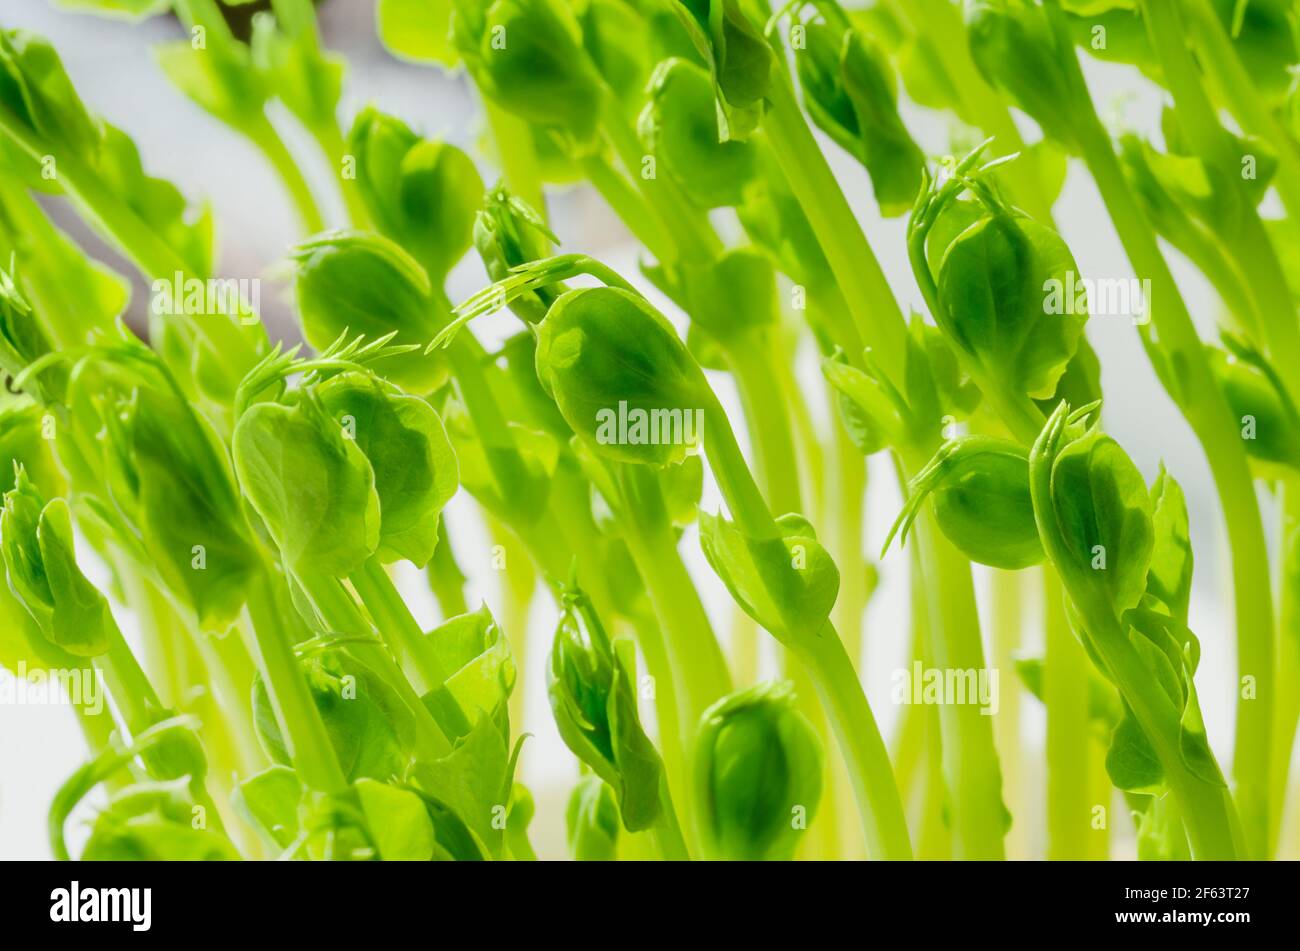 PEA, Jungpflanzen, Vorderansicht und Nahaufnahme. Microgreens von Pisum sativum. Grüne Triebe, Sämlinge und Sprossen, als Garnierung oder als Blattgemüse verwendet. Stockfoto